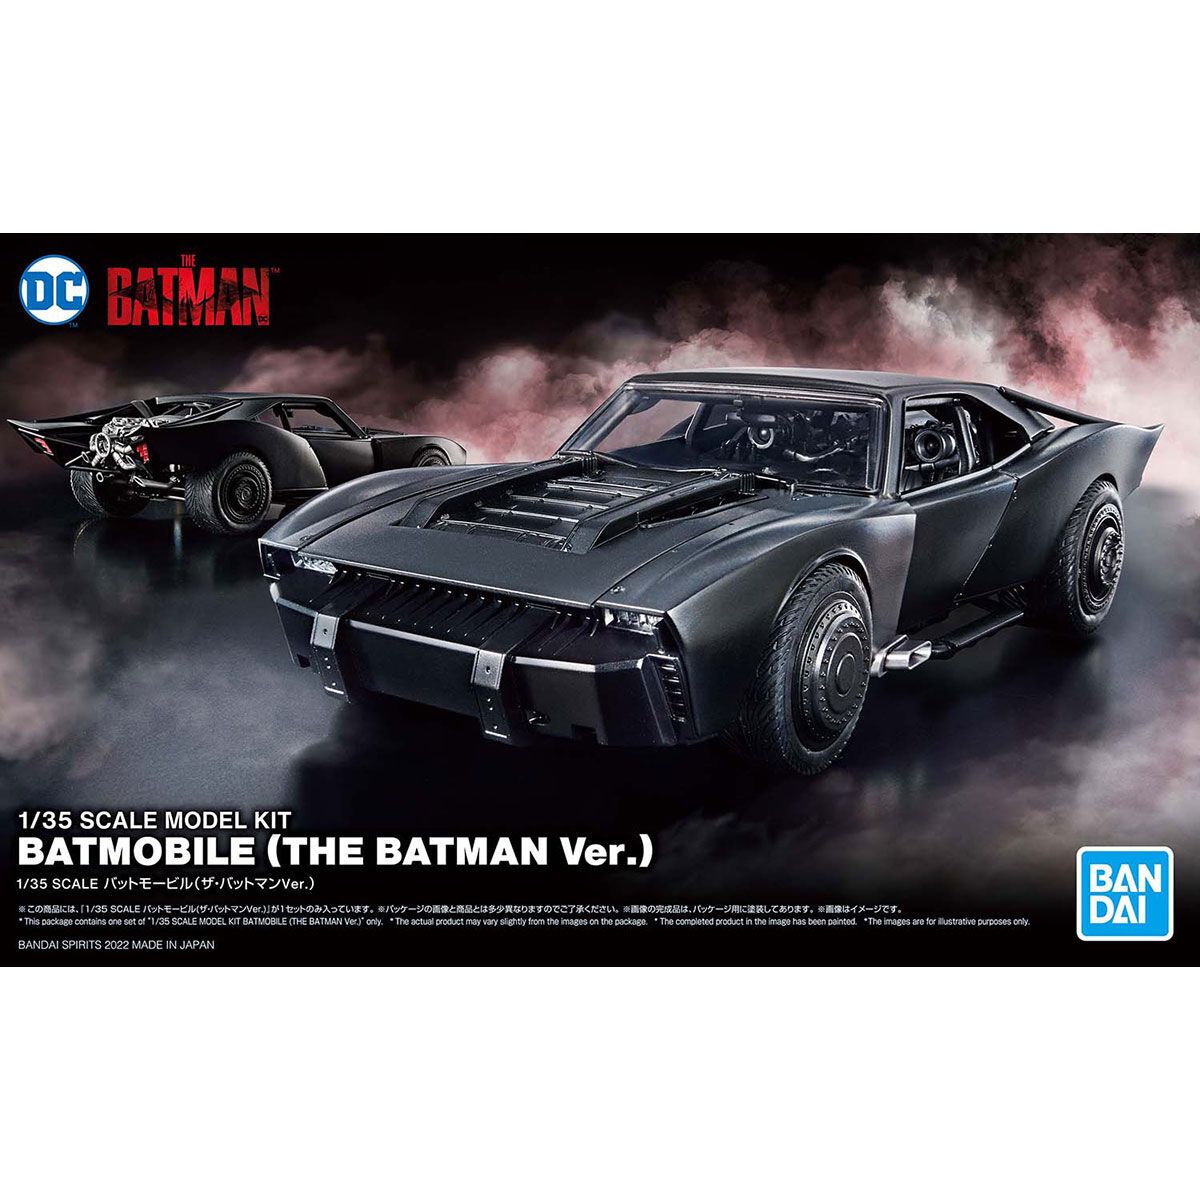 Bandai 1/35 Scale Batmobile (The Batman Ver.) Model Kit